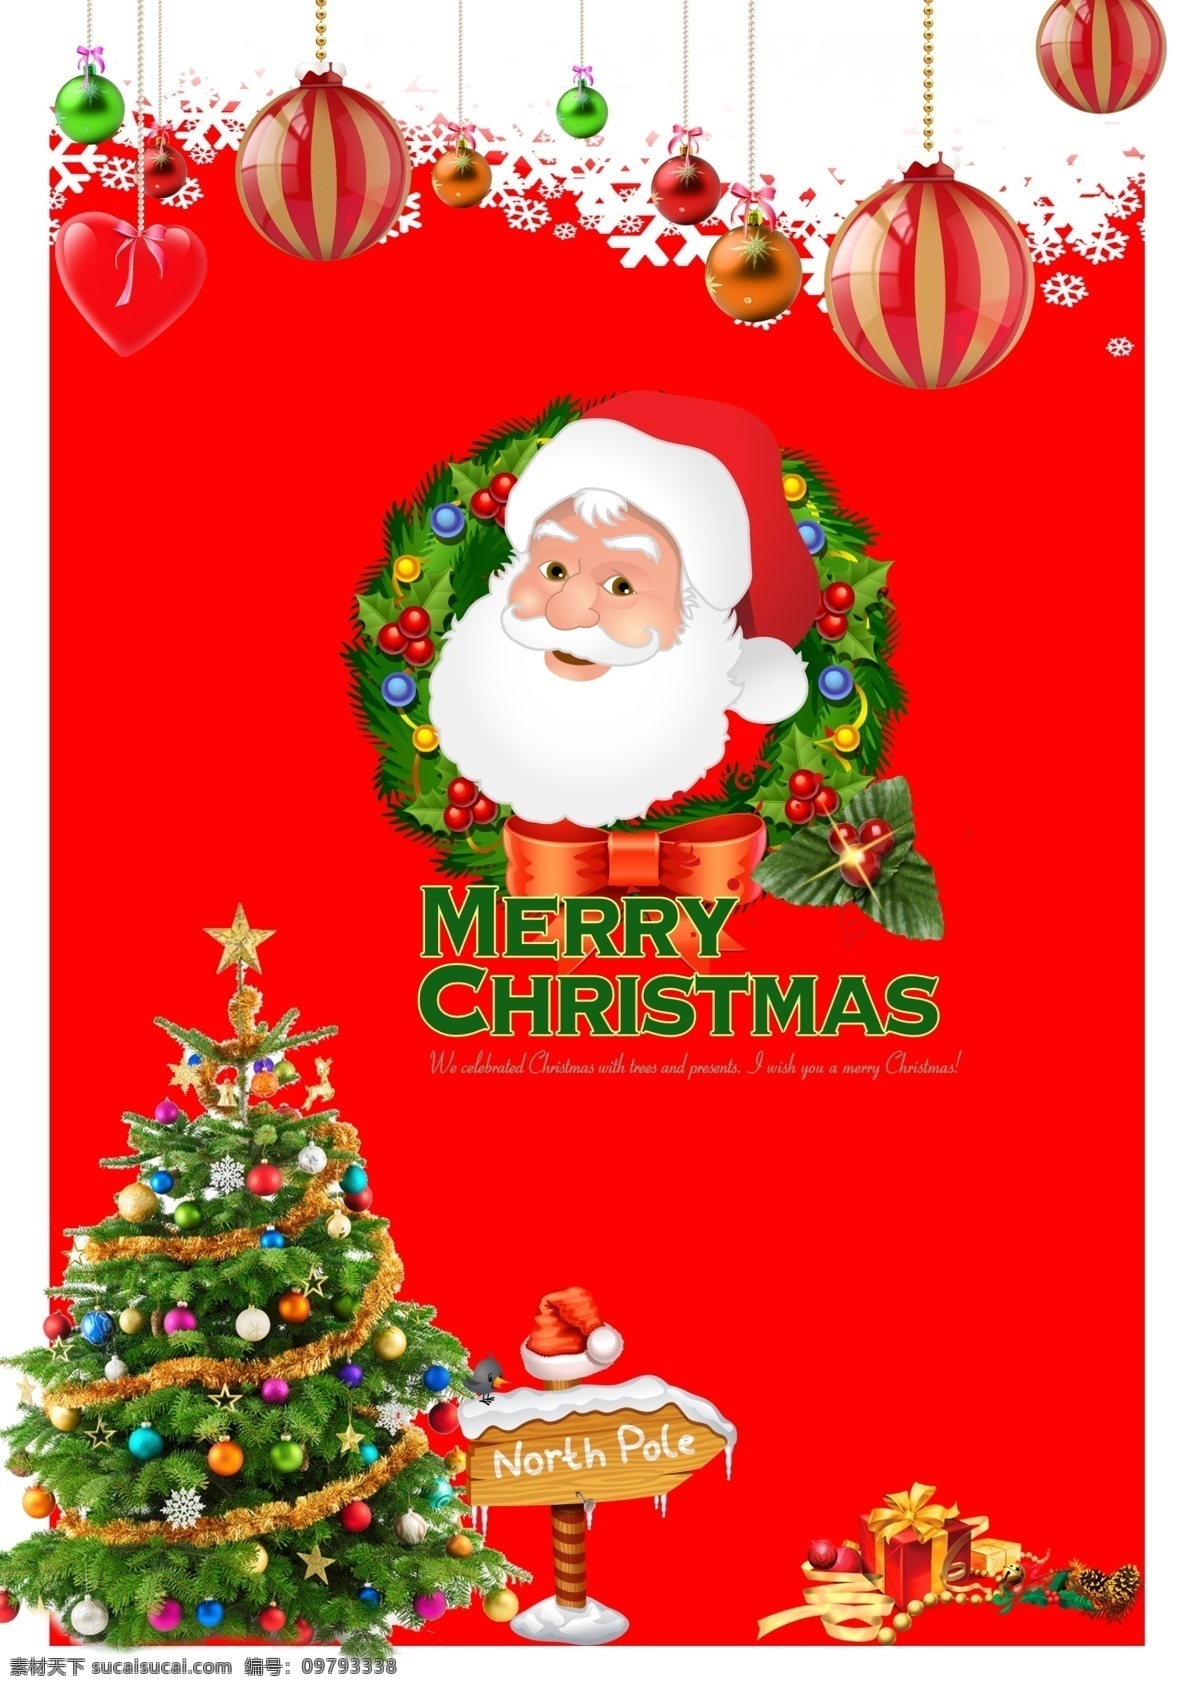 设计图 平面广告 圣诞节 稿 psd源文件 红色背景 圣诞树 圣诞老人 圣诞球 商场圣诞海报 psd设计图